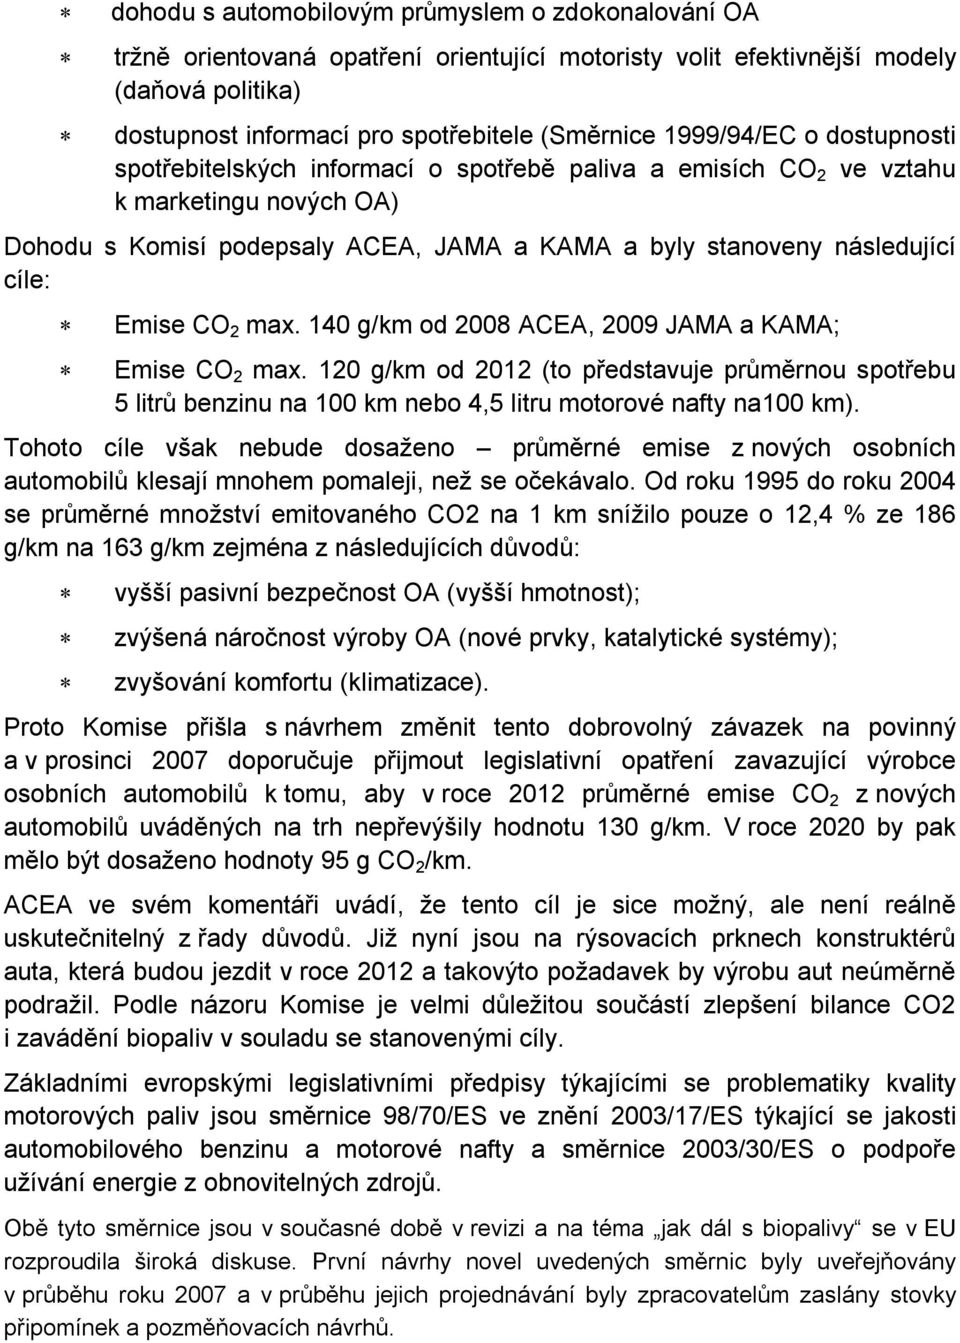 Emise CO 2 max. 140 g/km od 2008 ACEA, 2009 JAMA a KAMA; Emise CO 2 max. 120 g/km od 2012 (to představuje průměrnou spotřebu 5 litrů benzinu na 100 km nebo 4,5 litru motorové nafty na100 km).